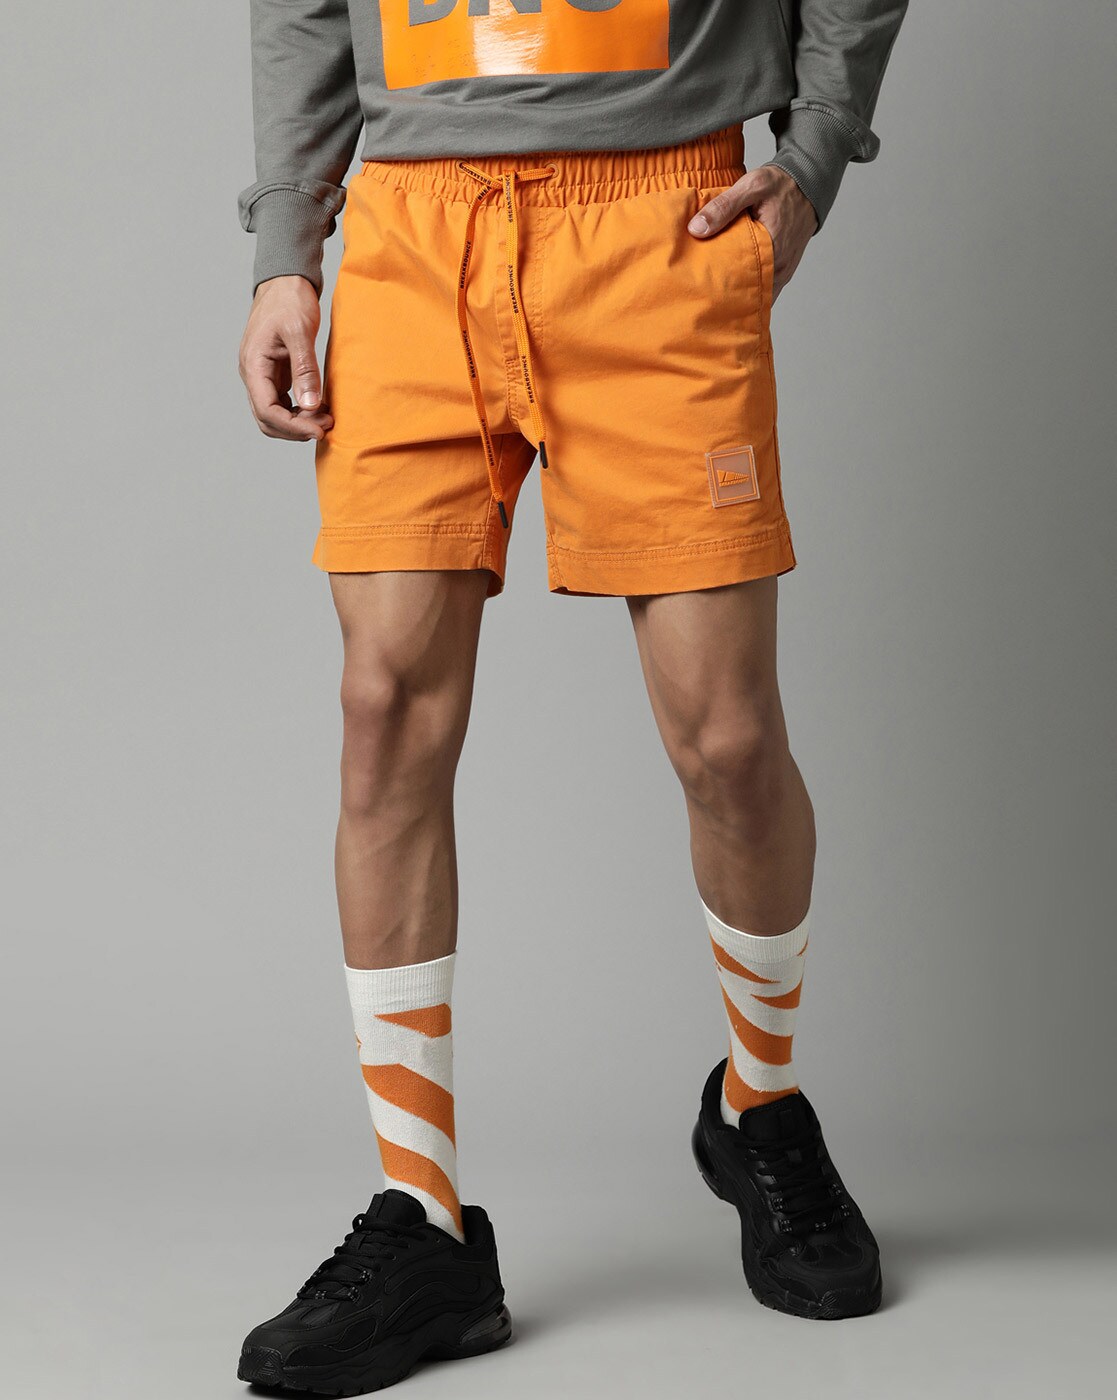 Mens Orange Shorts